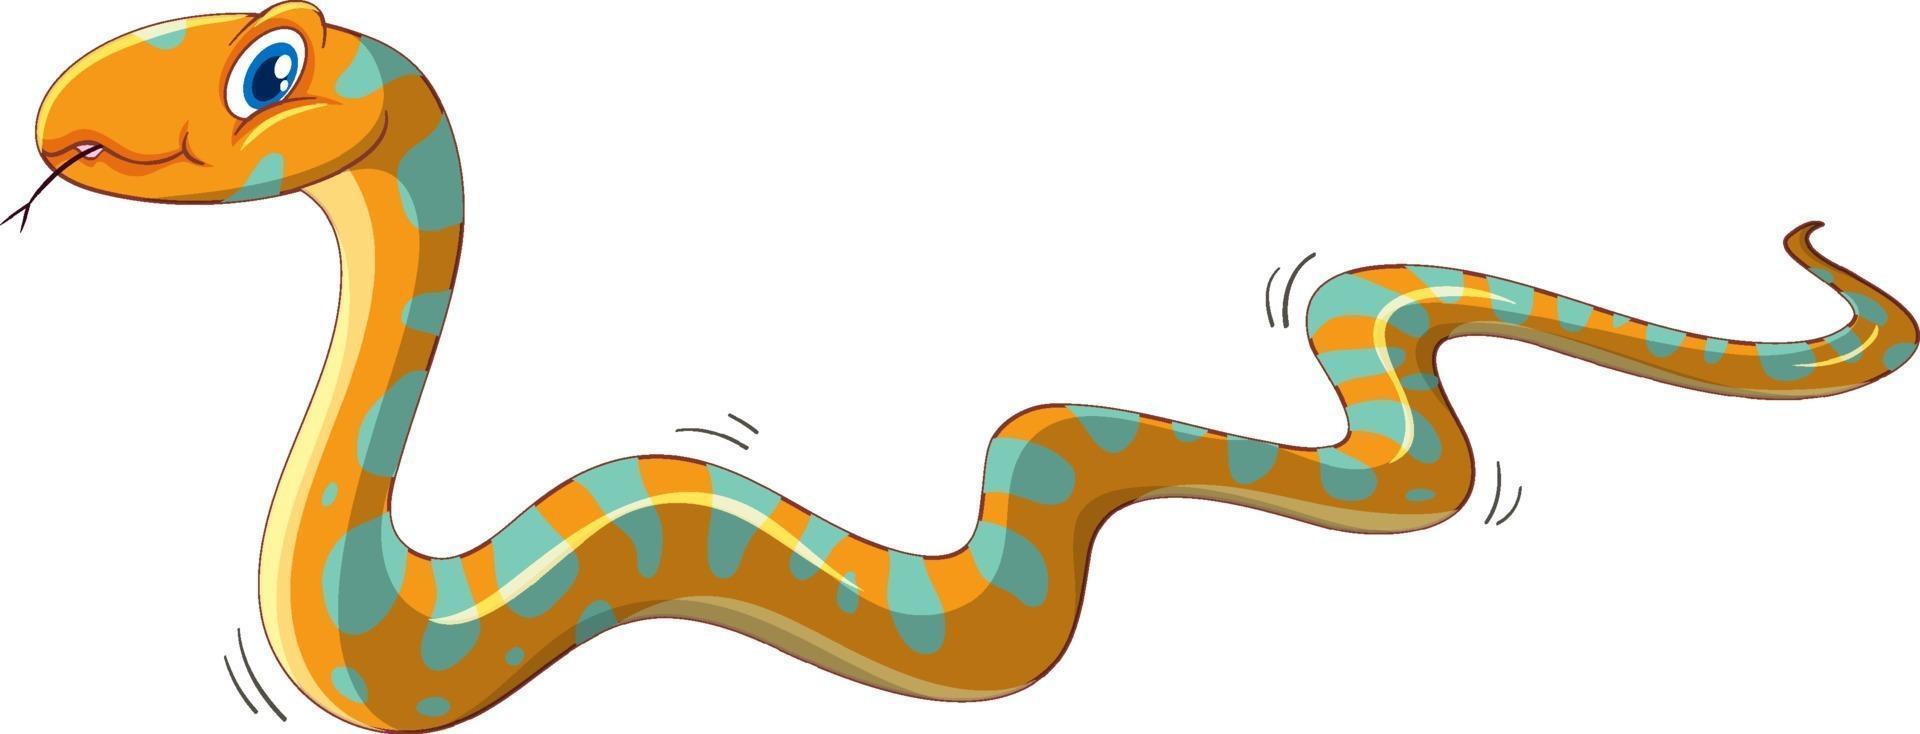 personnage de dessin animé de serpent jaune isolé sur fond blanc vecteur